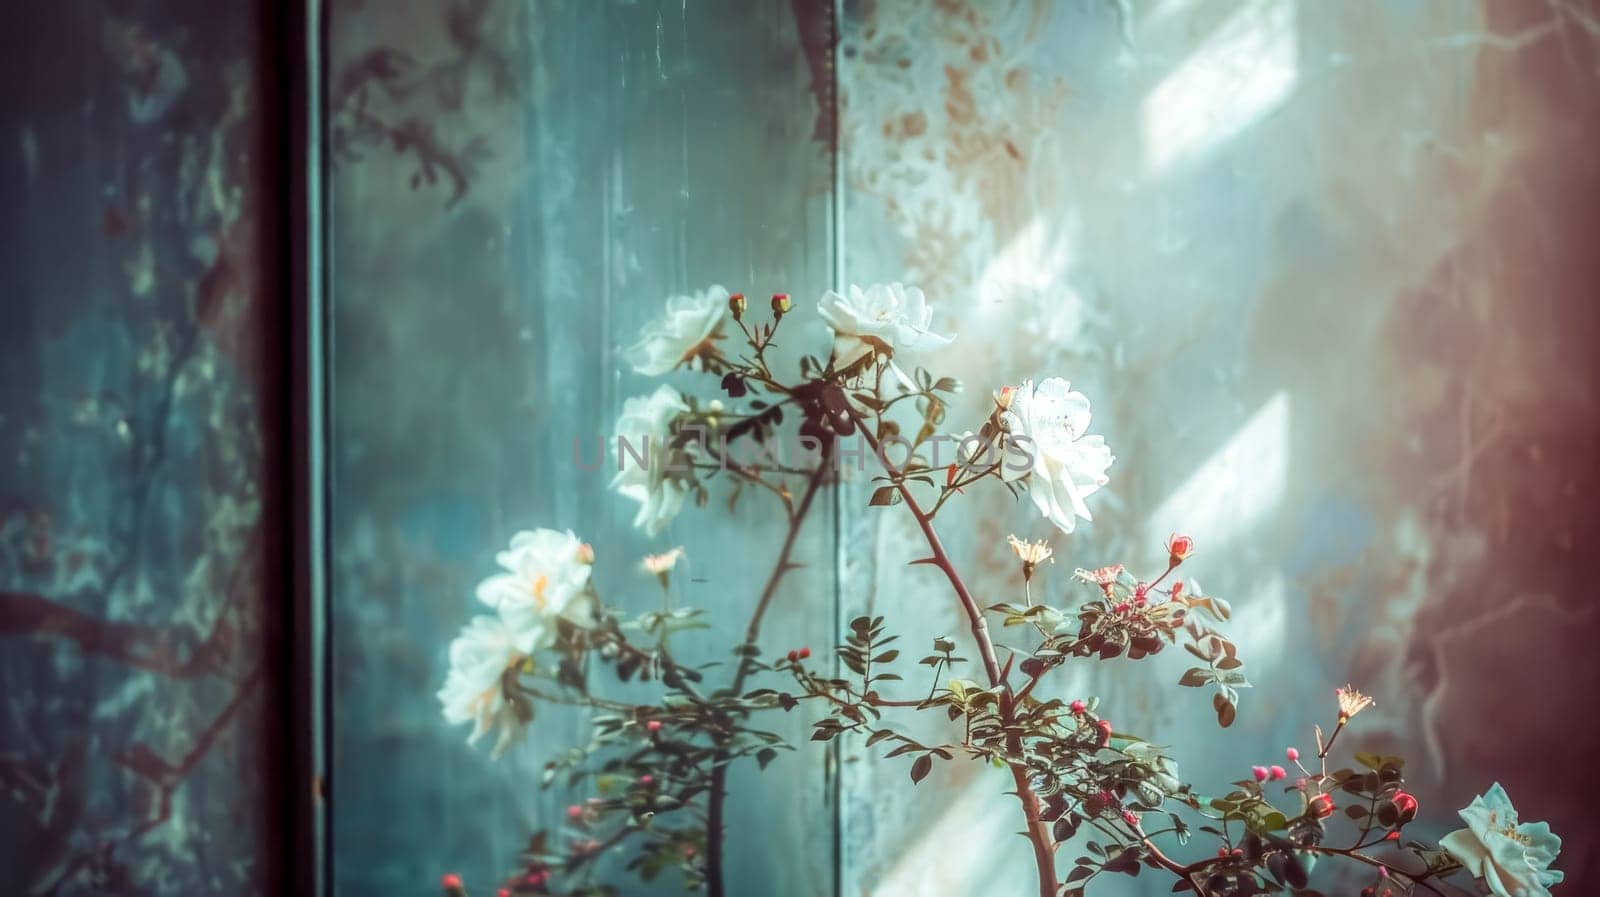 Delicate white roses flourish beside a weathered windowpane, invoking a nostalgic vibe